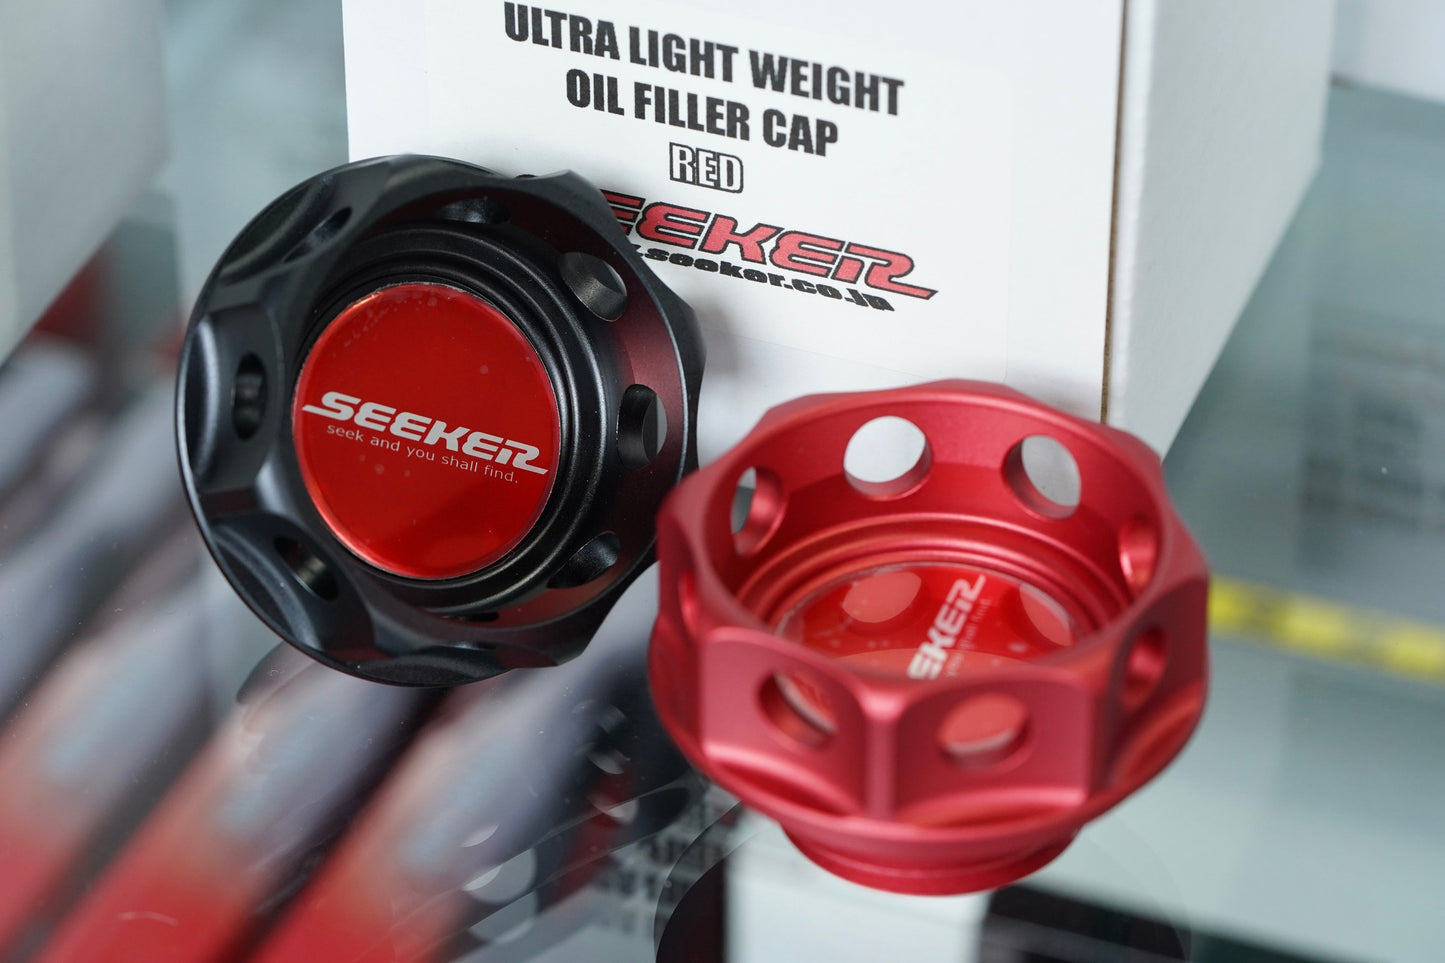 SEEKER Ultra Light Weight Oil Filler Cap